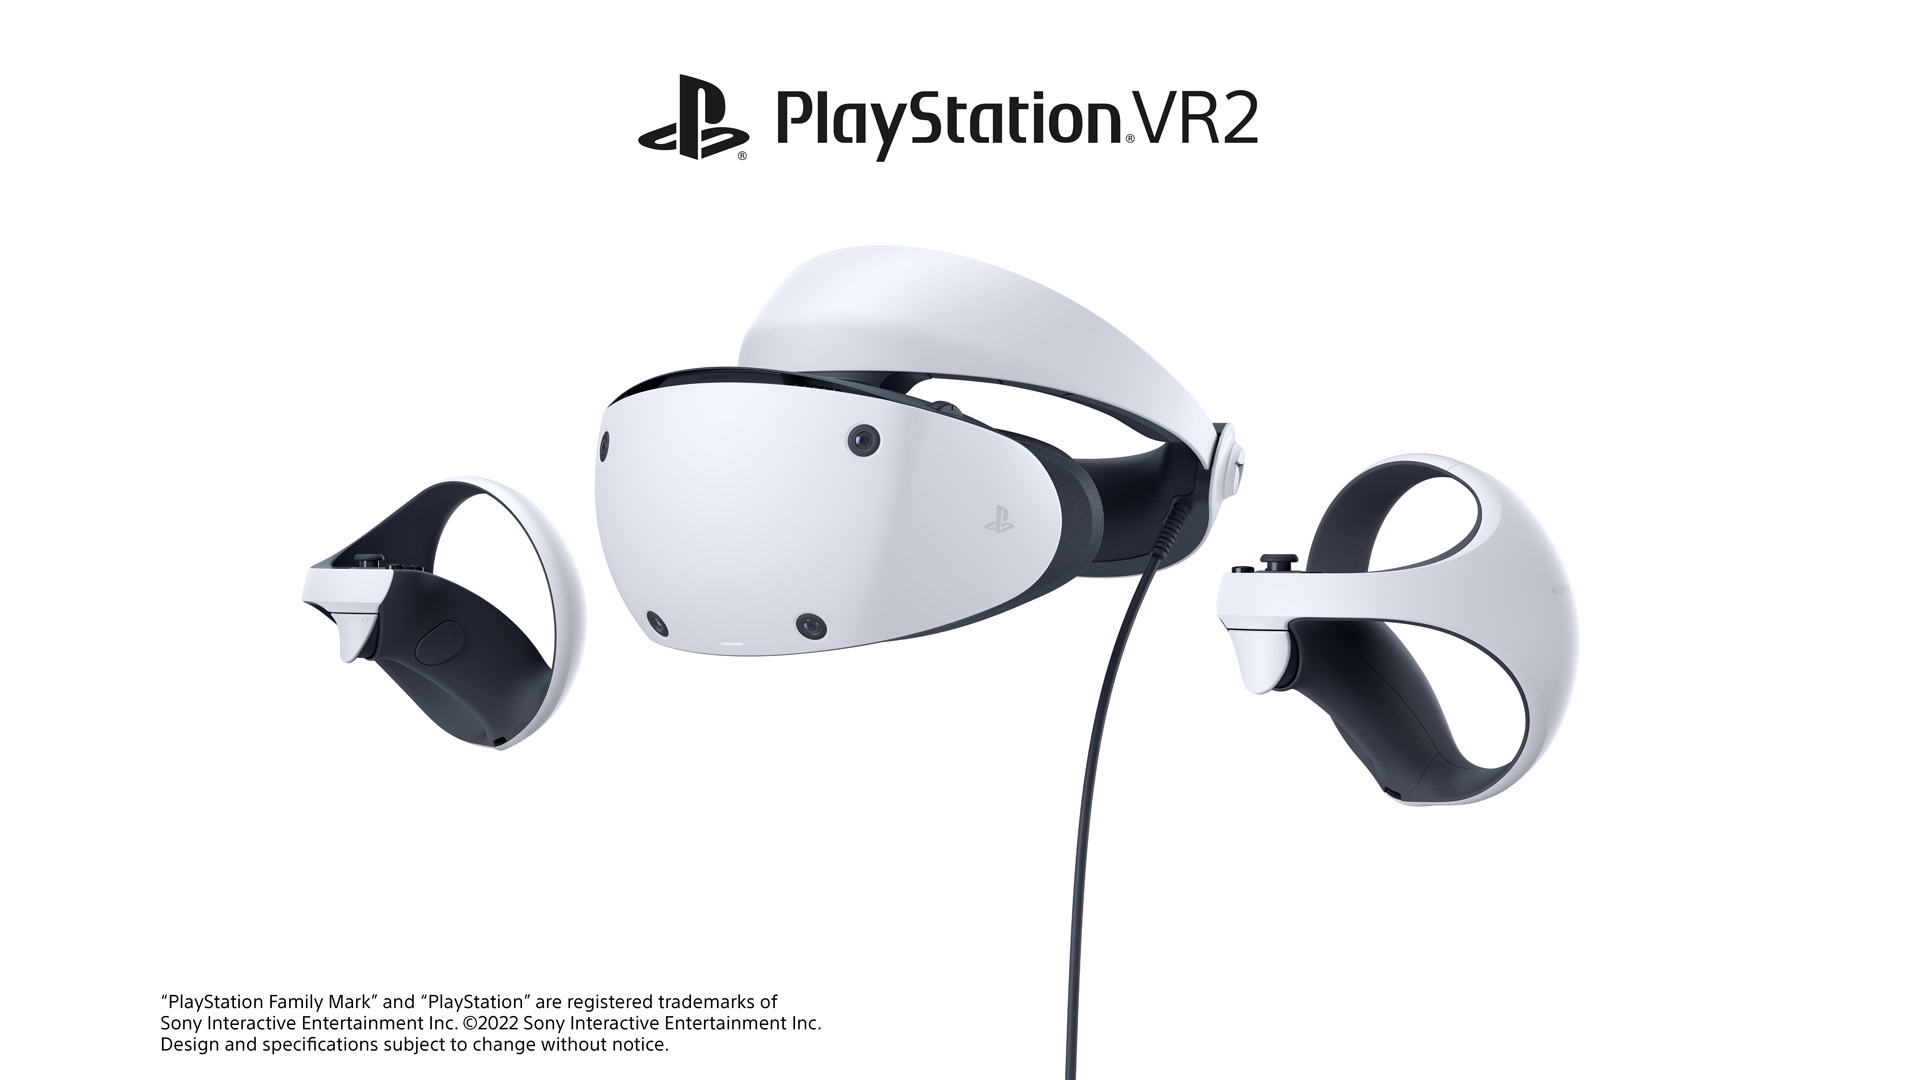 ソニー、PS VR2の新機能を公開。シースルービュー、カメラと合成配信